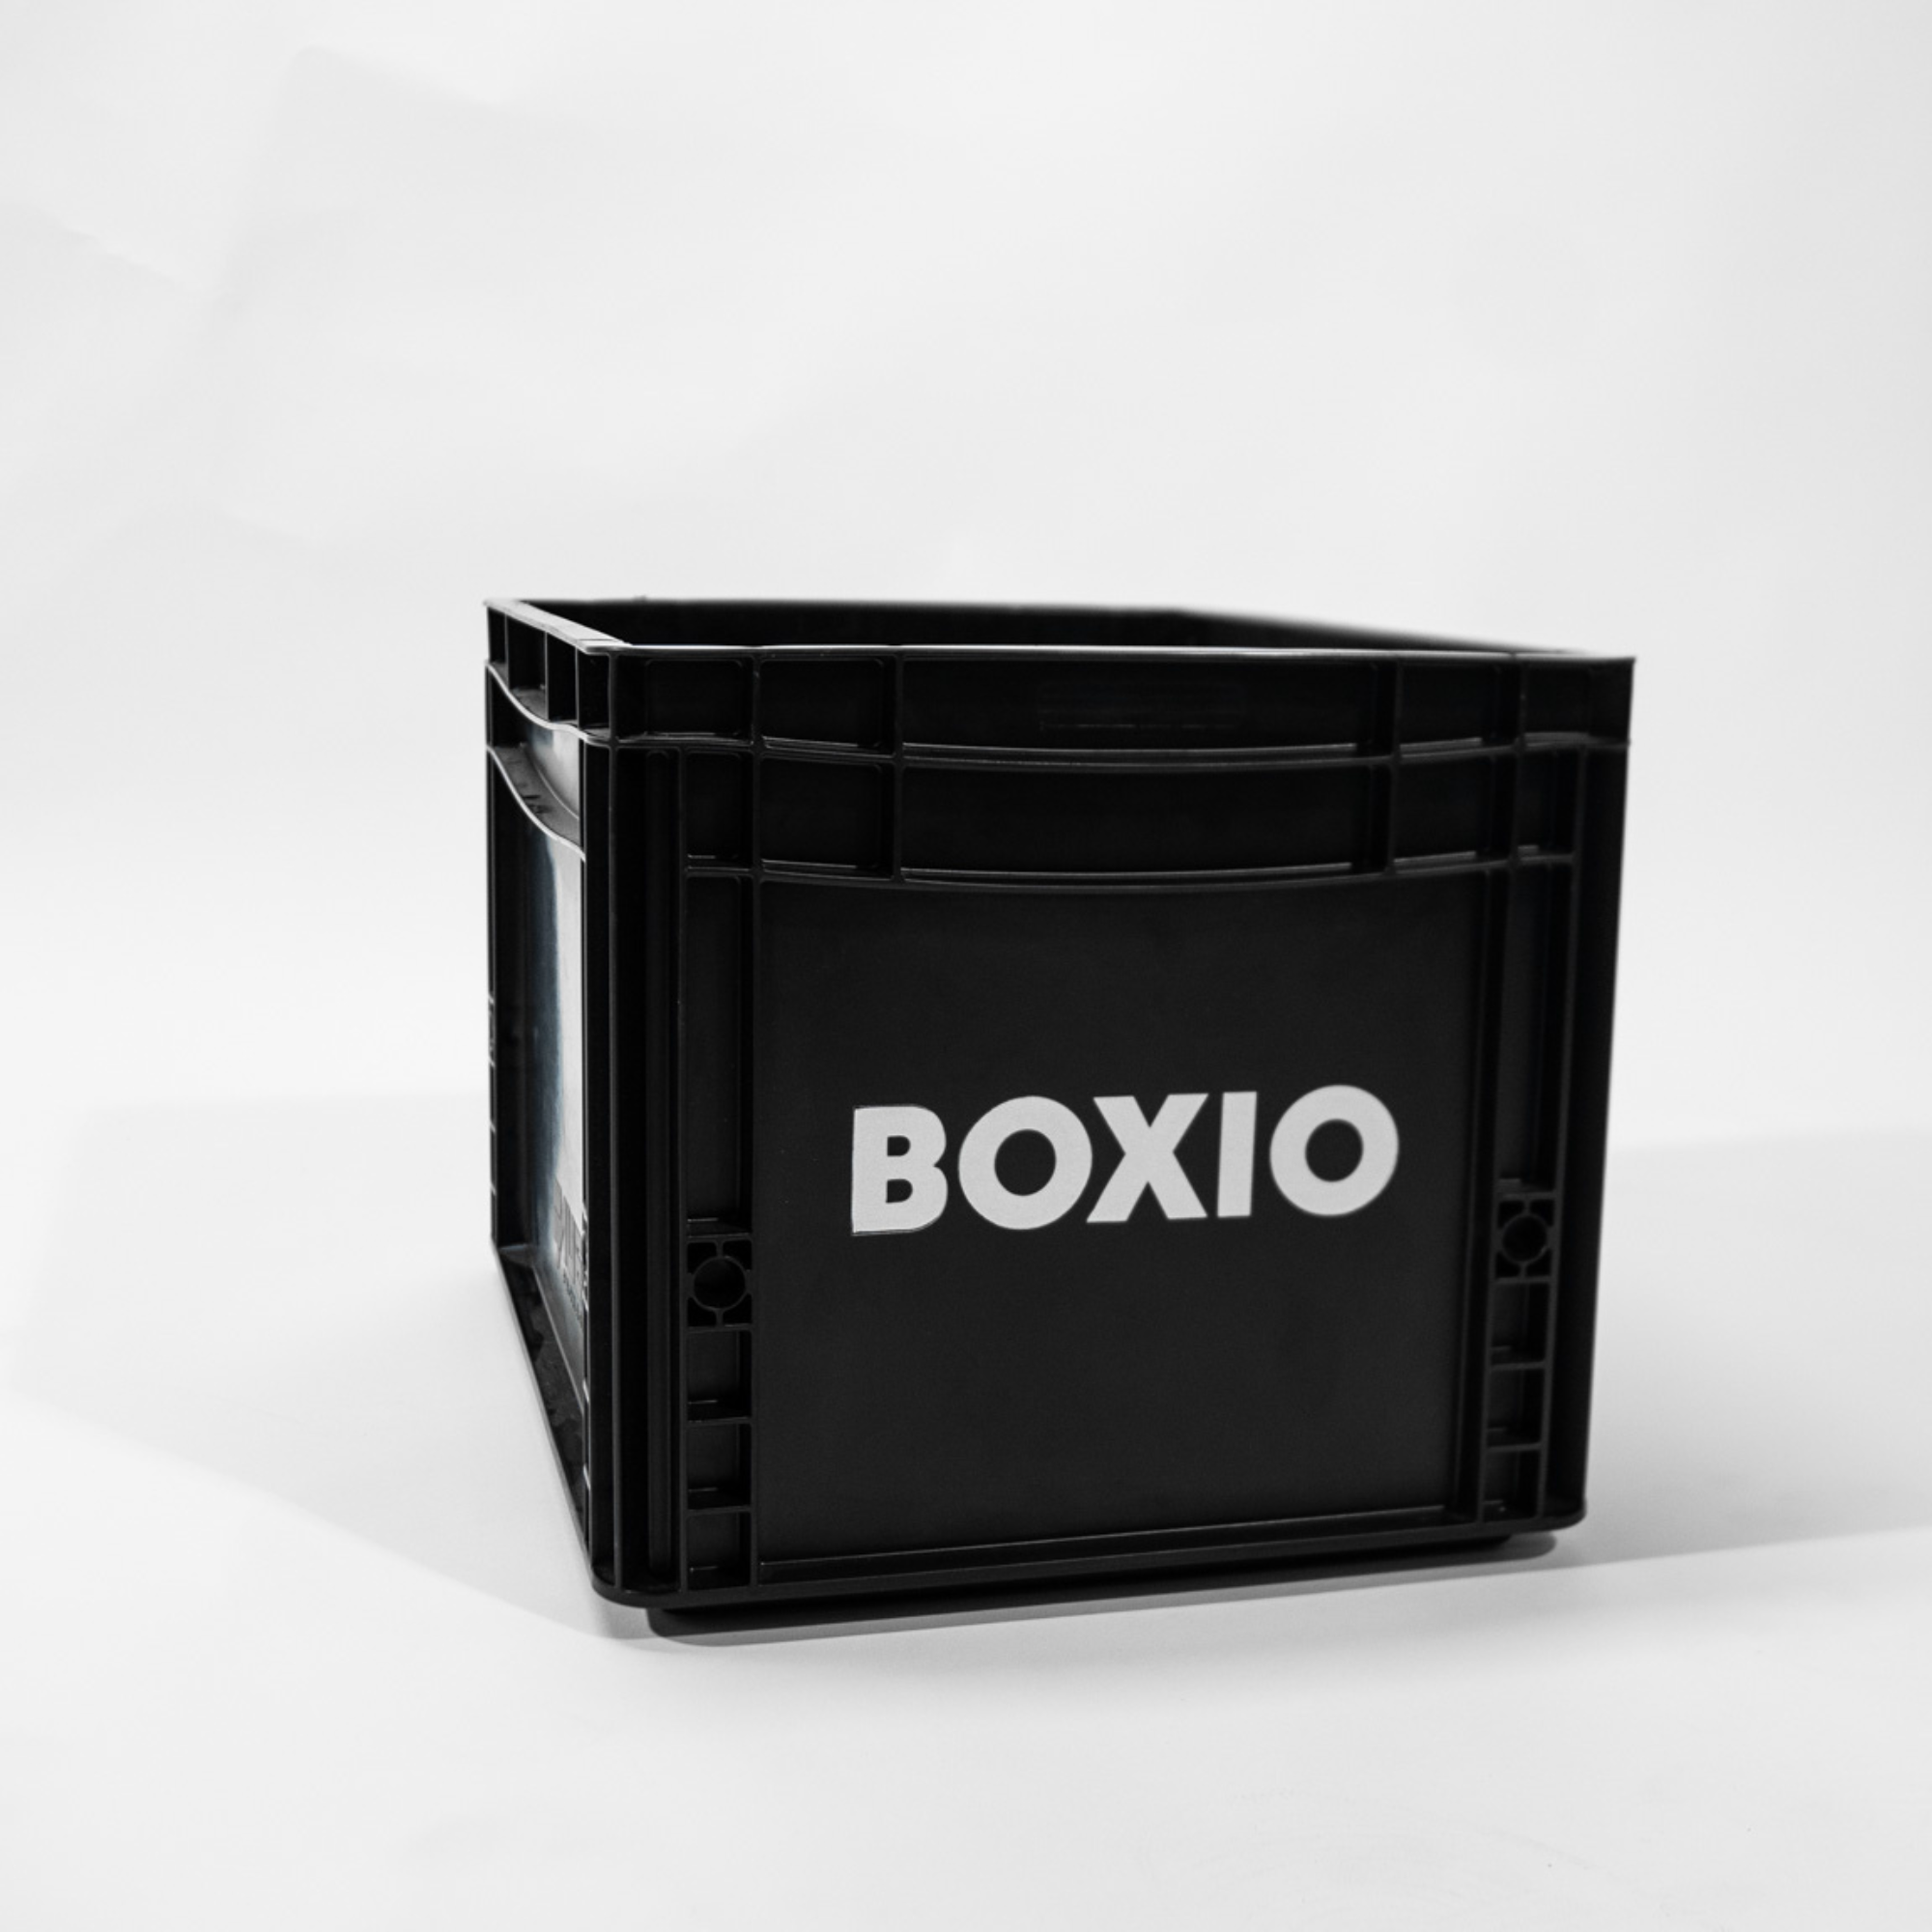 Eurobox "BOXIO" z otworami do BOXIO - TOILET & WASH